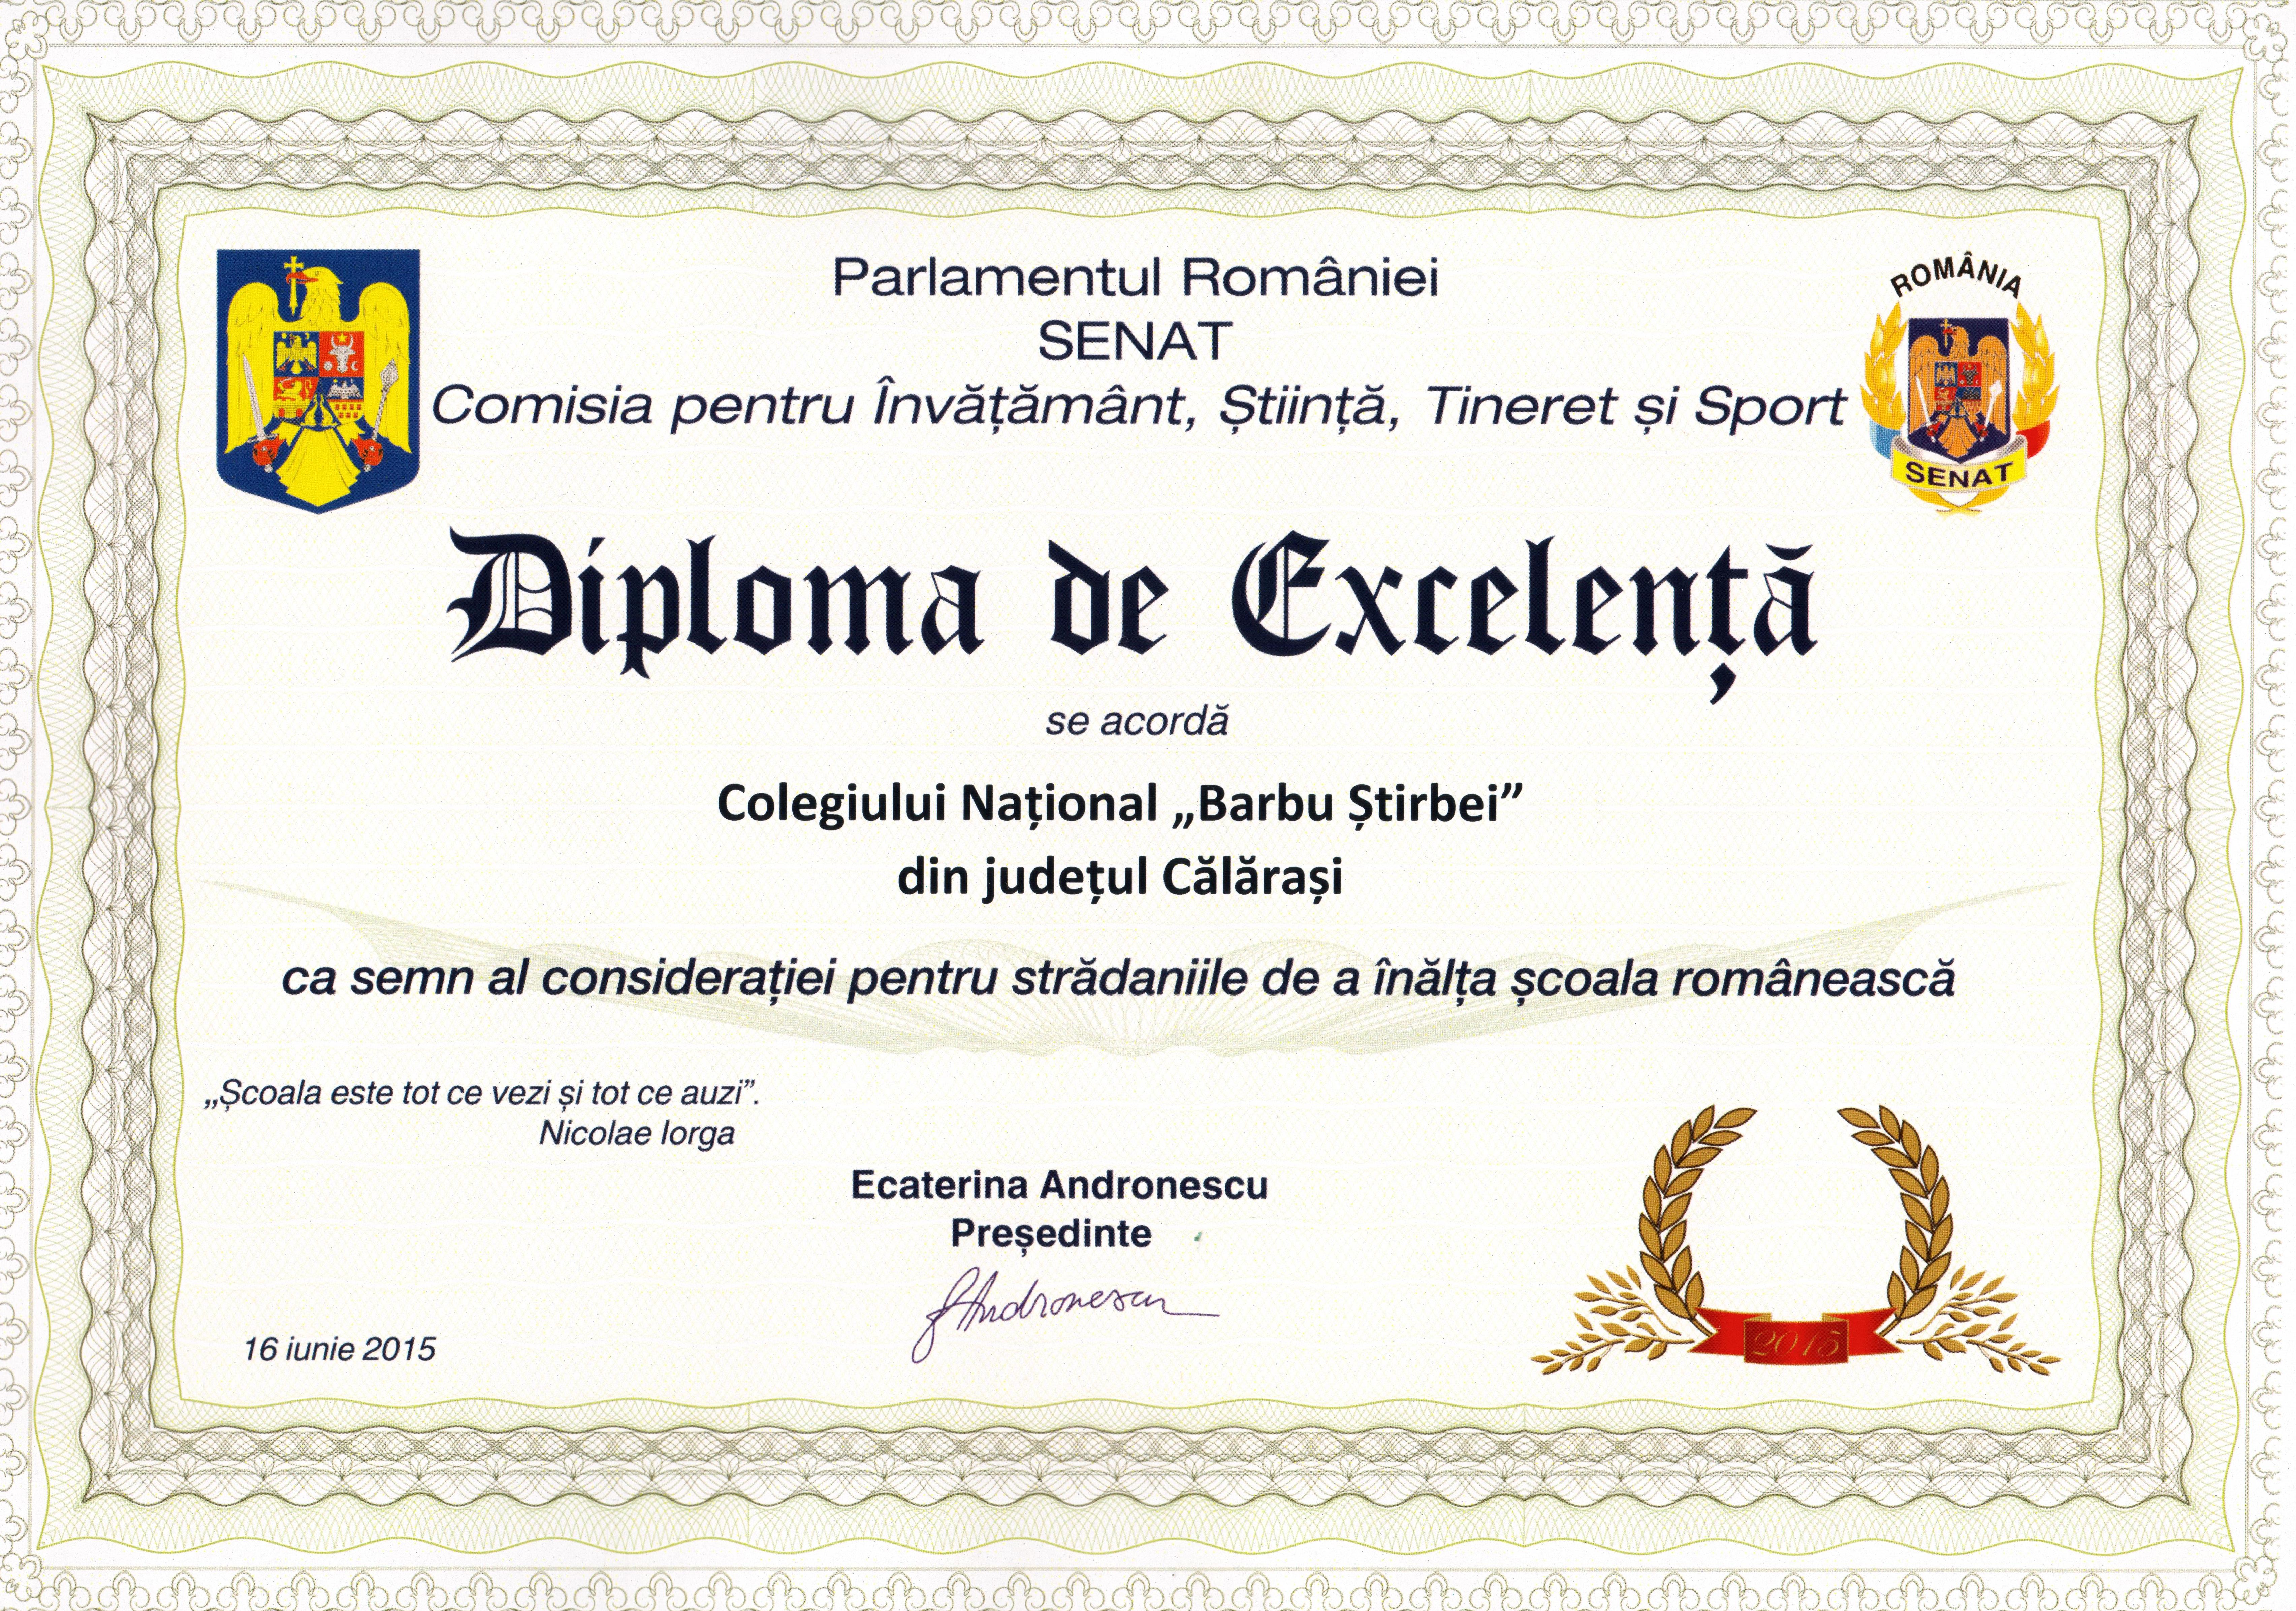 Diploma de ecelenta